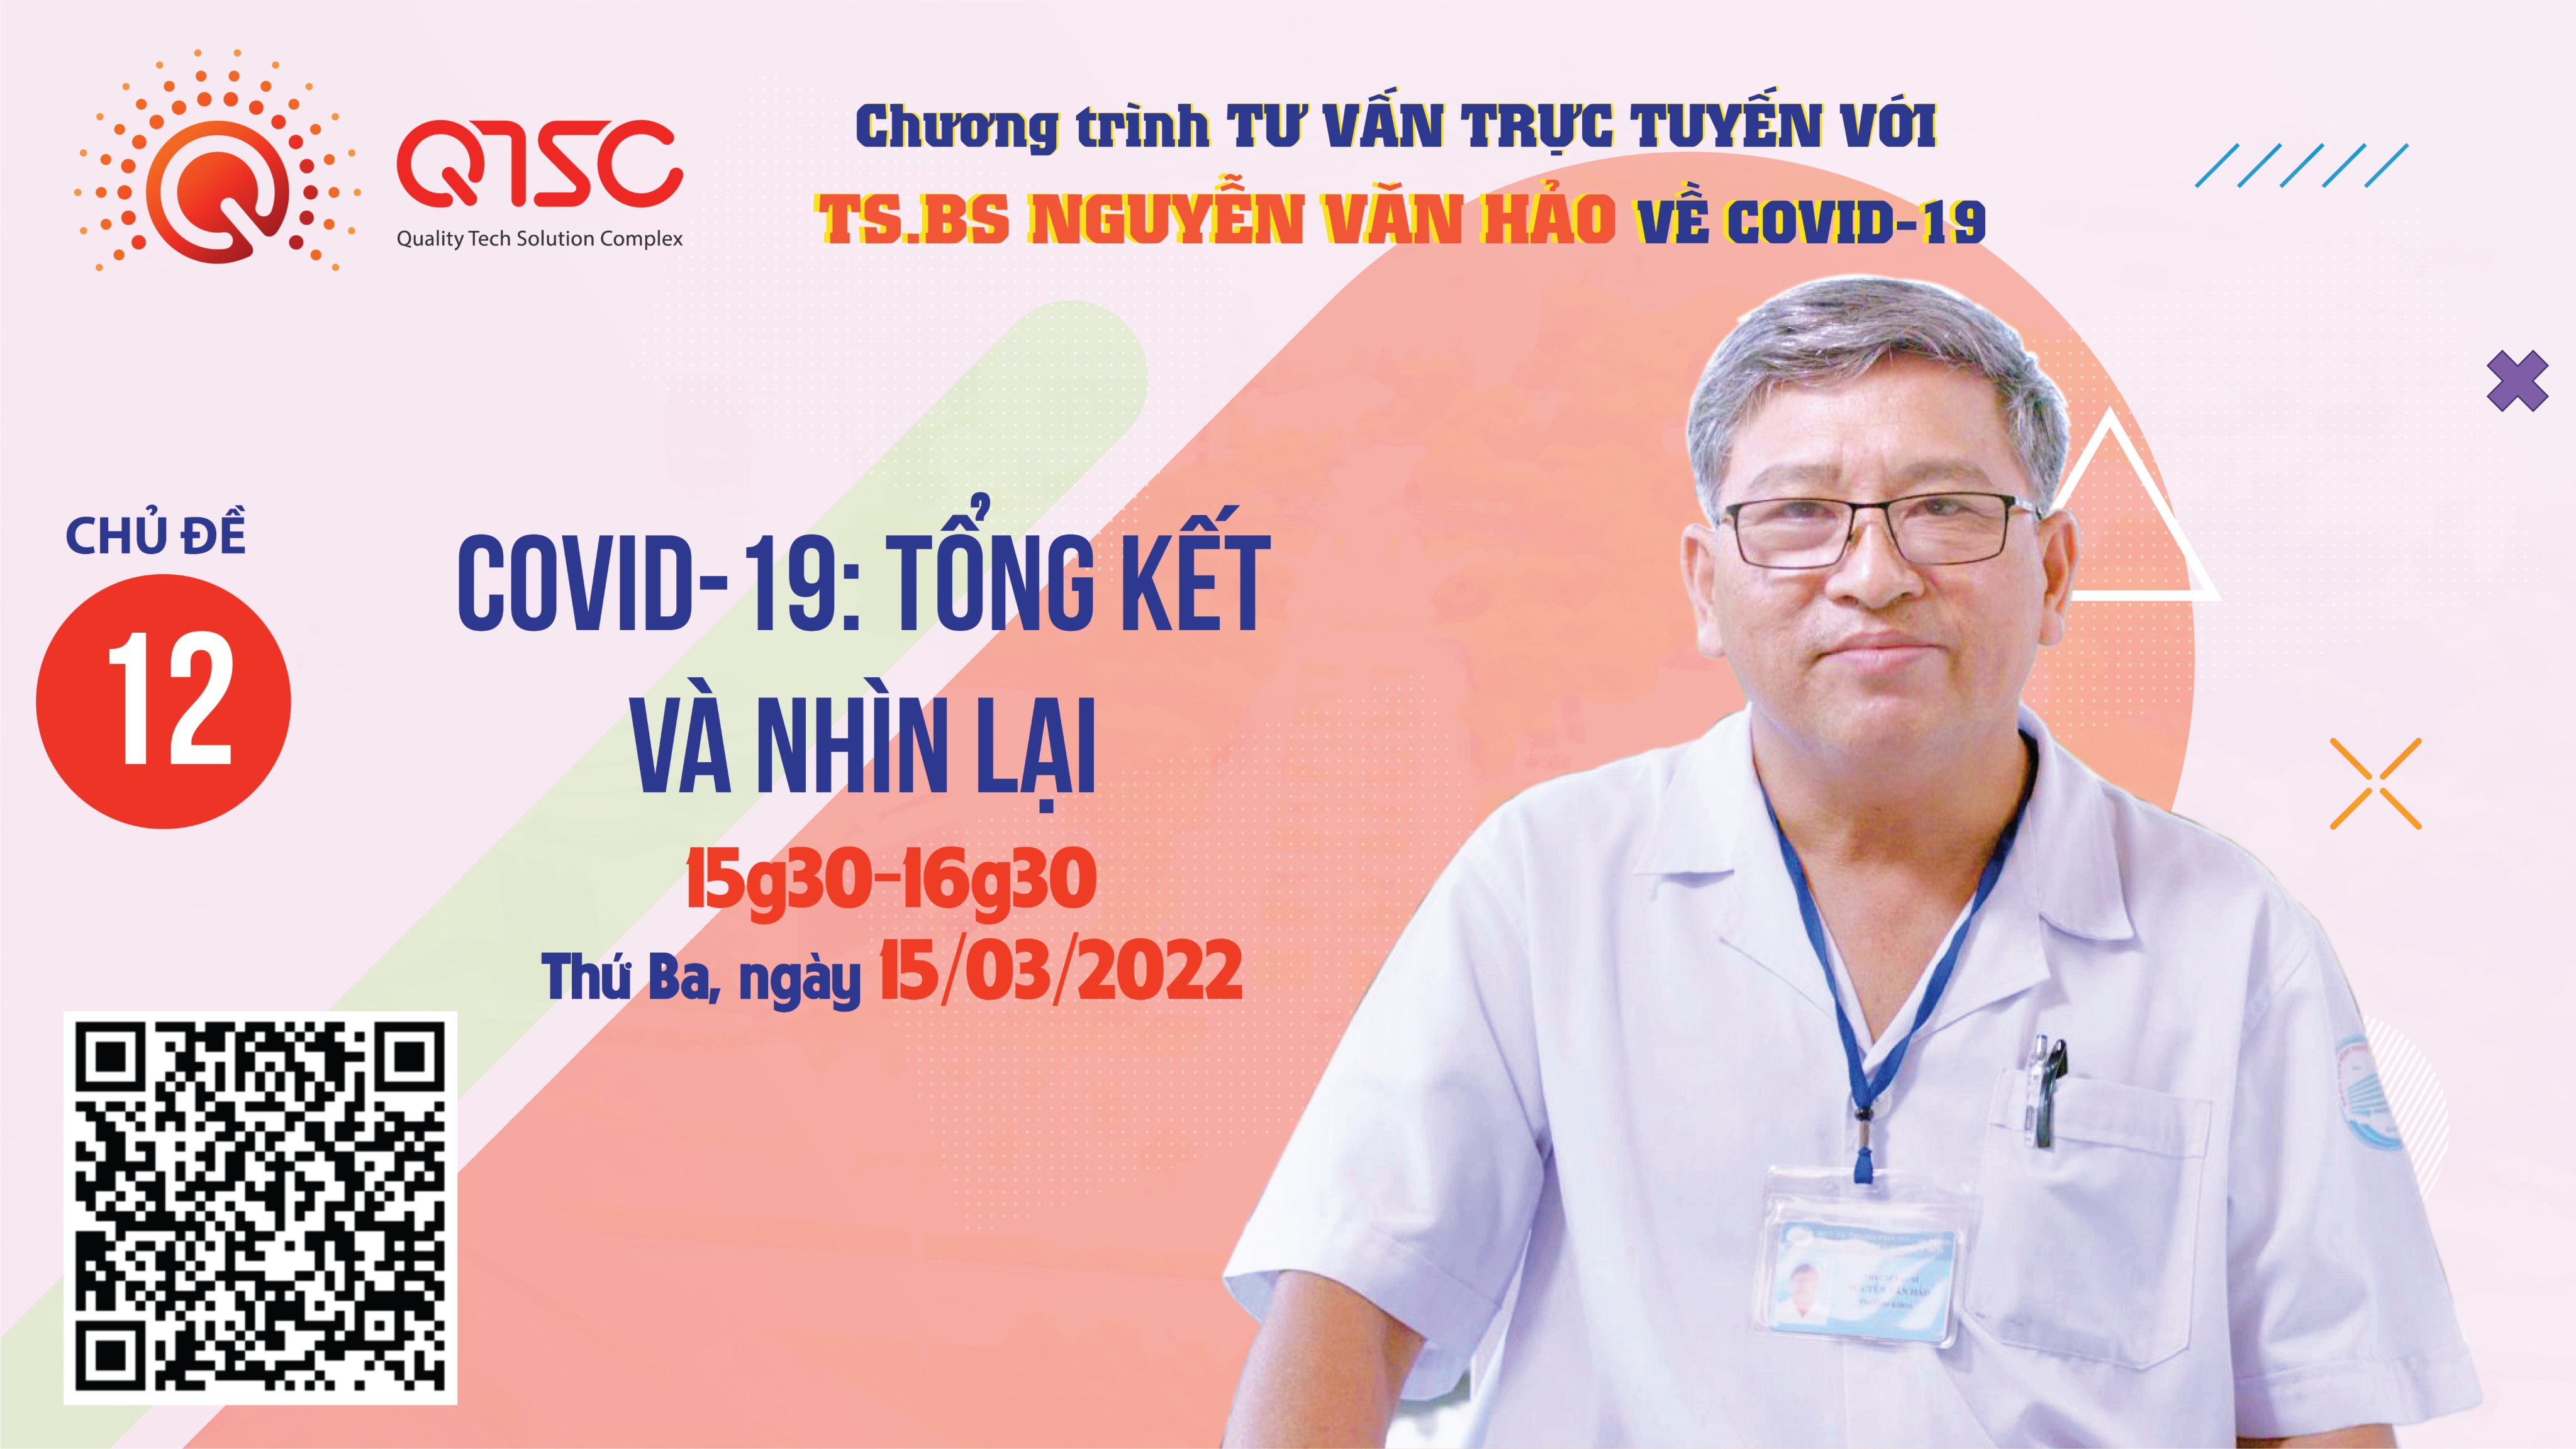 Dự kiến, buổi tư vấn trực tuyến tiếp theo của TS.BS Nguyễn Văn Hảo sẽ được tổ chức từ 15g30 - 16g30, thứ Ba ngày 15/03/2022 với chủ đề “Covid-19: Tổng kết và nhìn lại”.